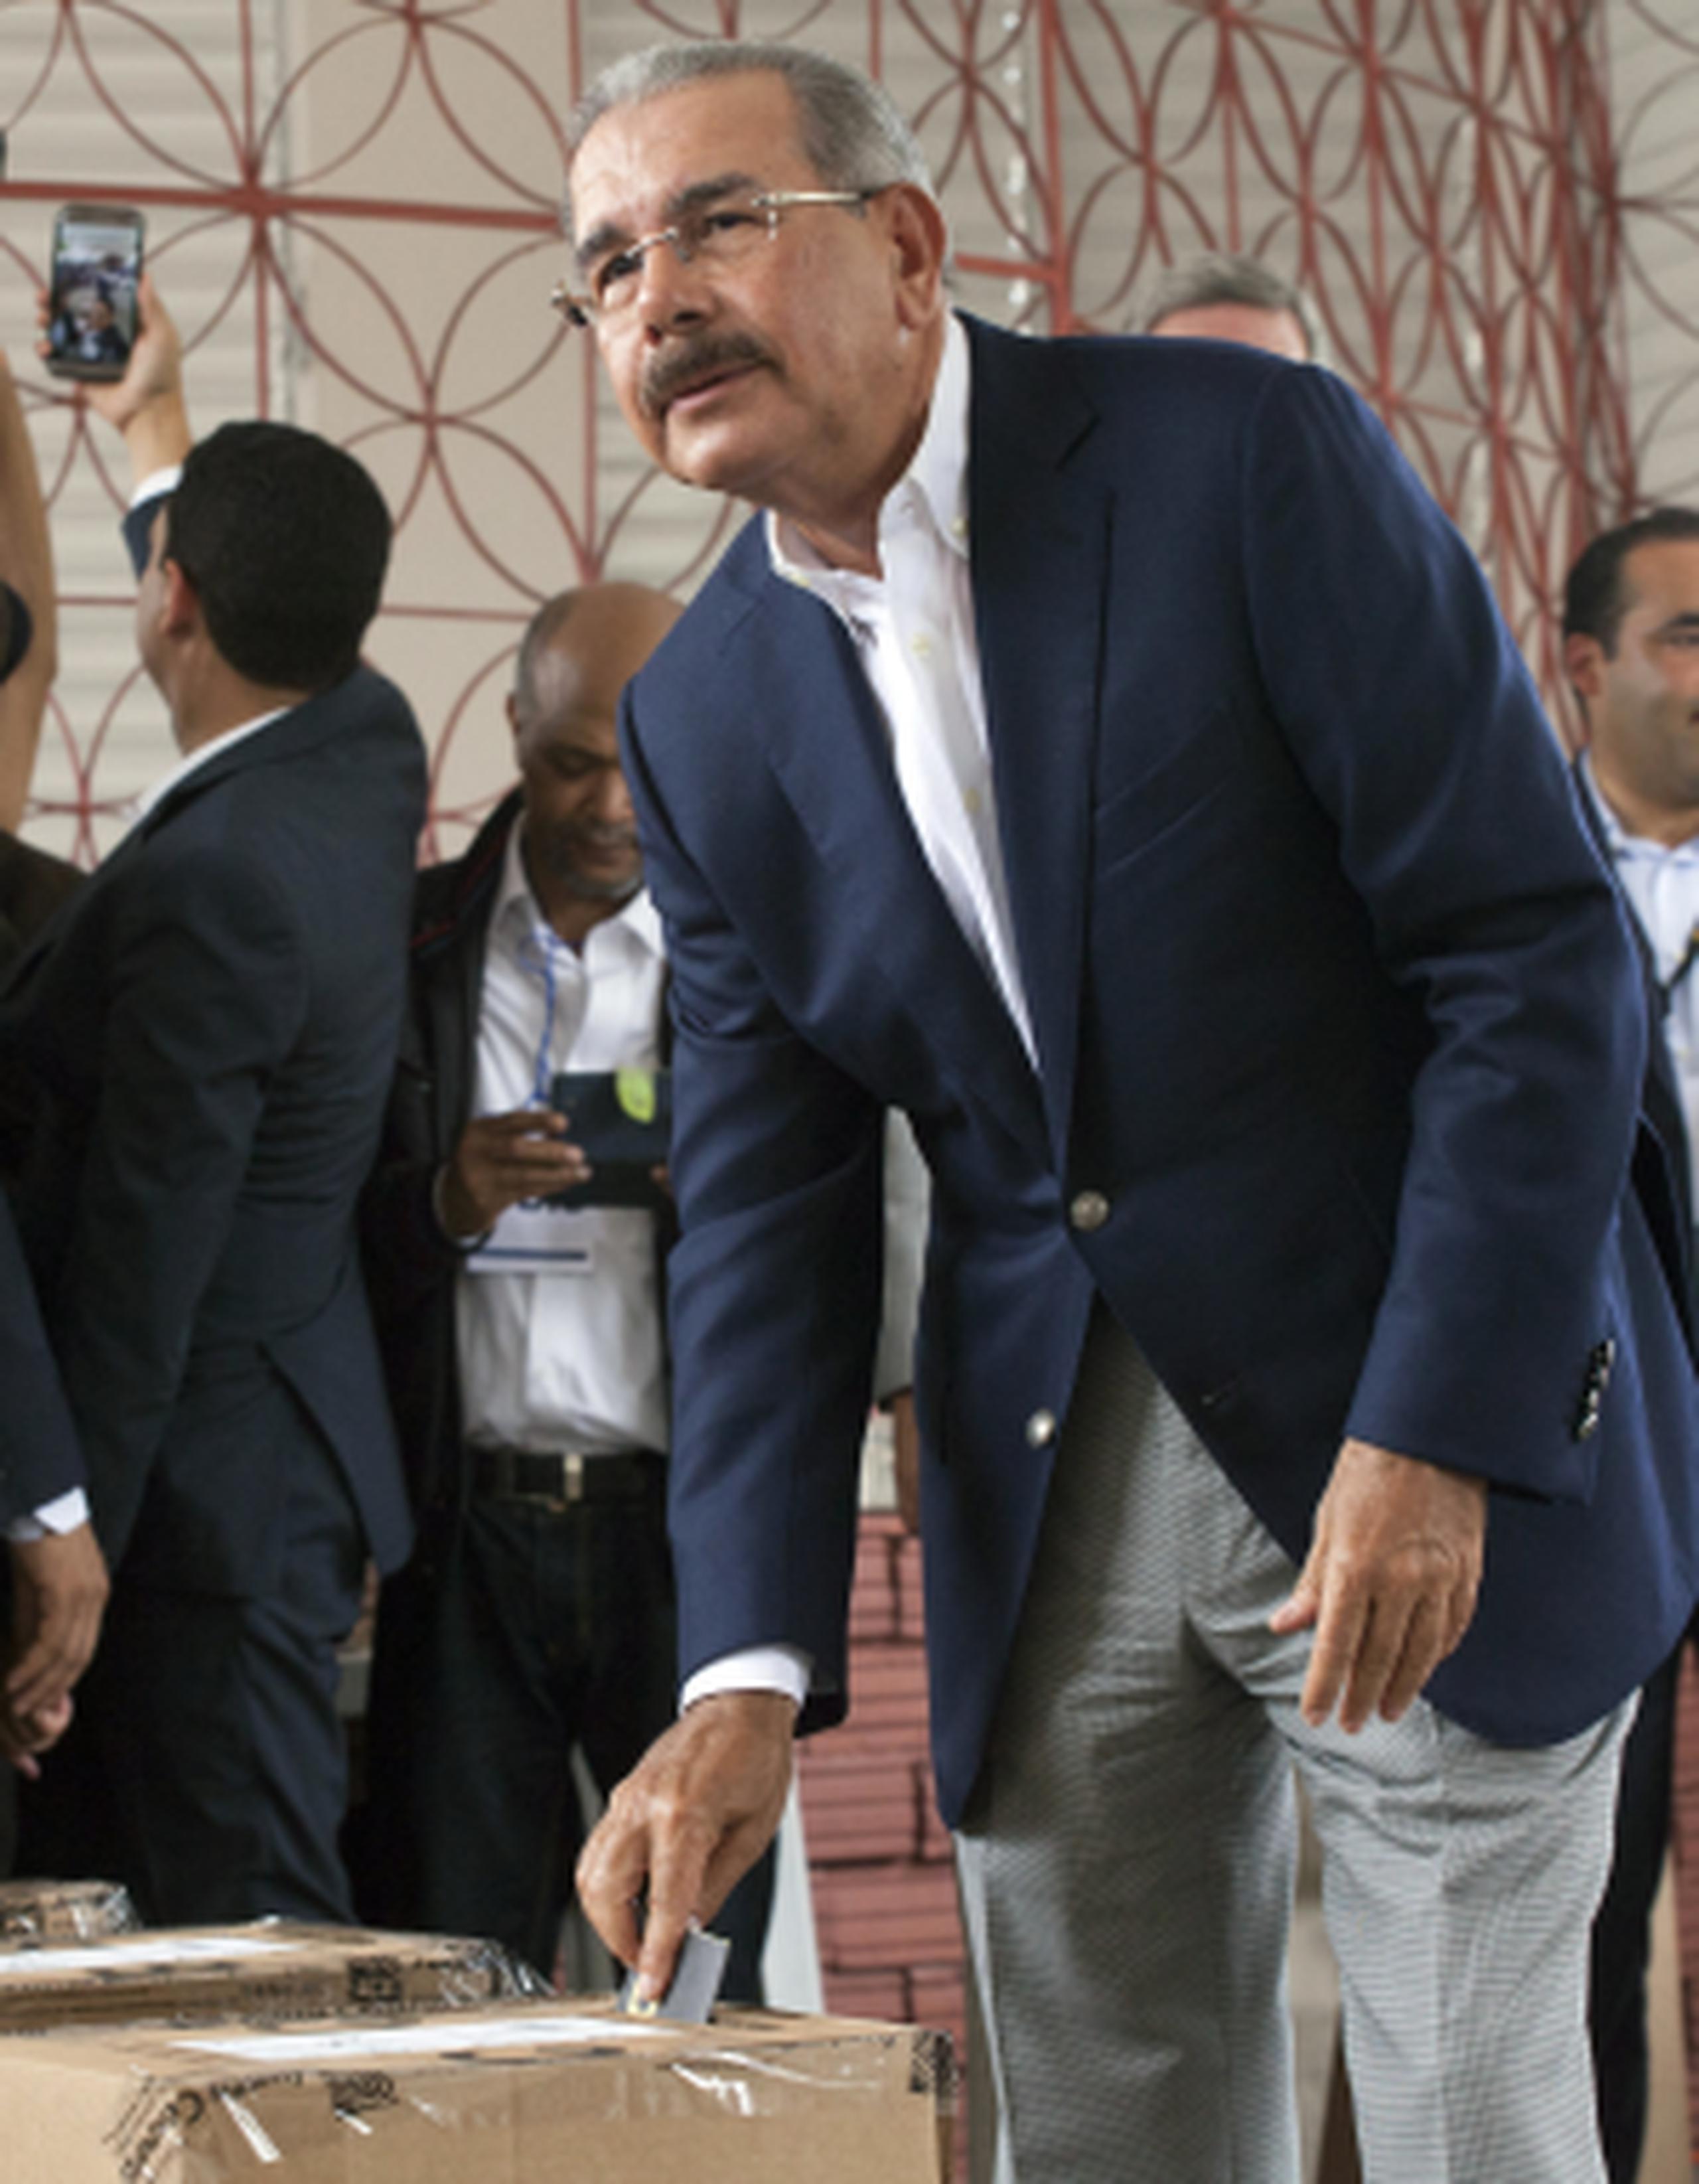 El presidente dominicano Danilo Medina encabeza por amplio margen las elecciones luego de conocerse los primeros resultados parciales. (AP/Tatiana Fernandez)
